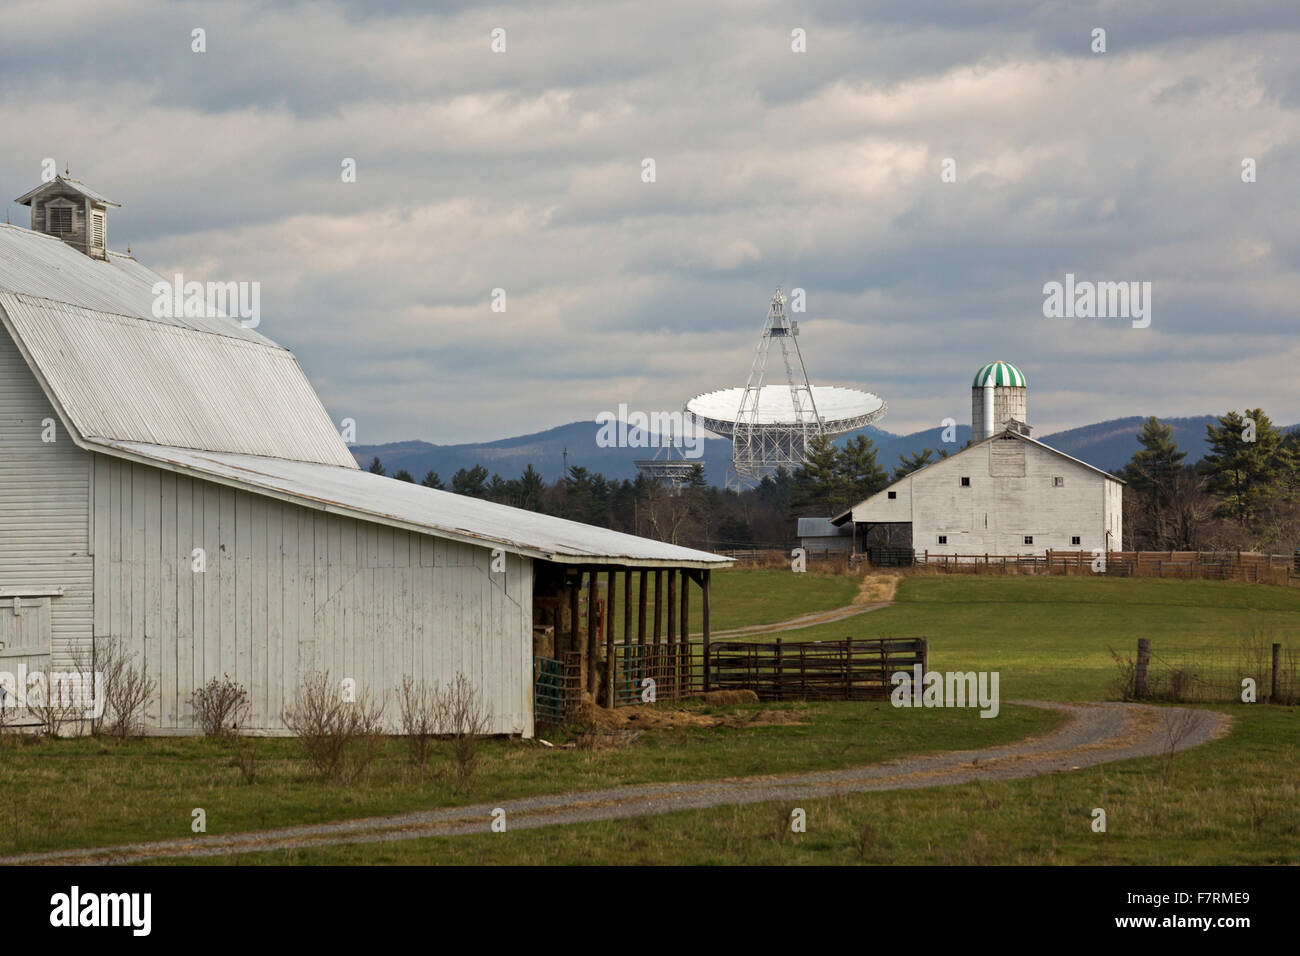 Green Bank, en Virginie de l'Ouest - Le National Radio Astronomy Observatory Télescope Banque Verte près des fermes. Banque D'Images